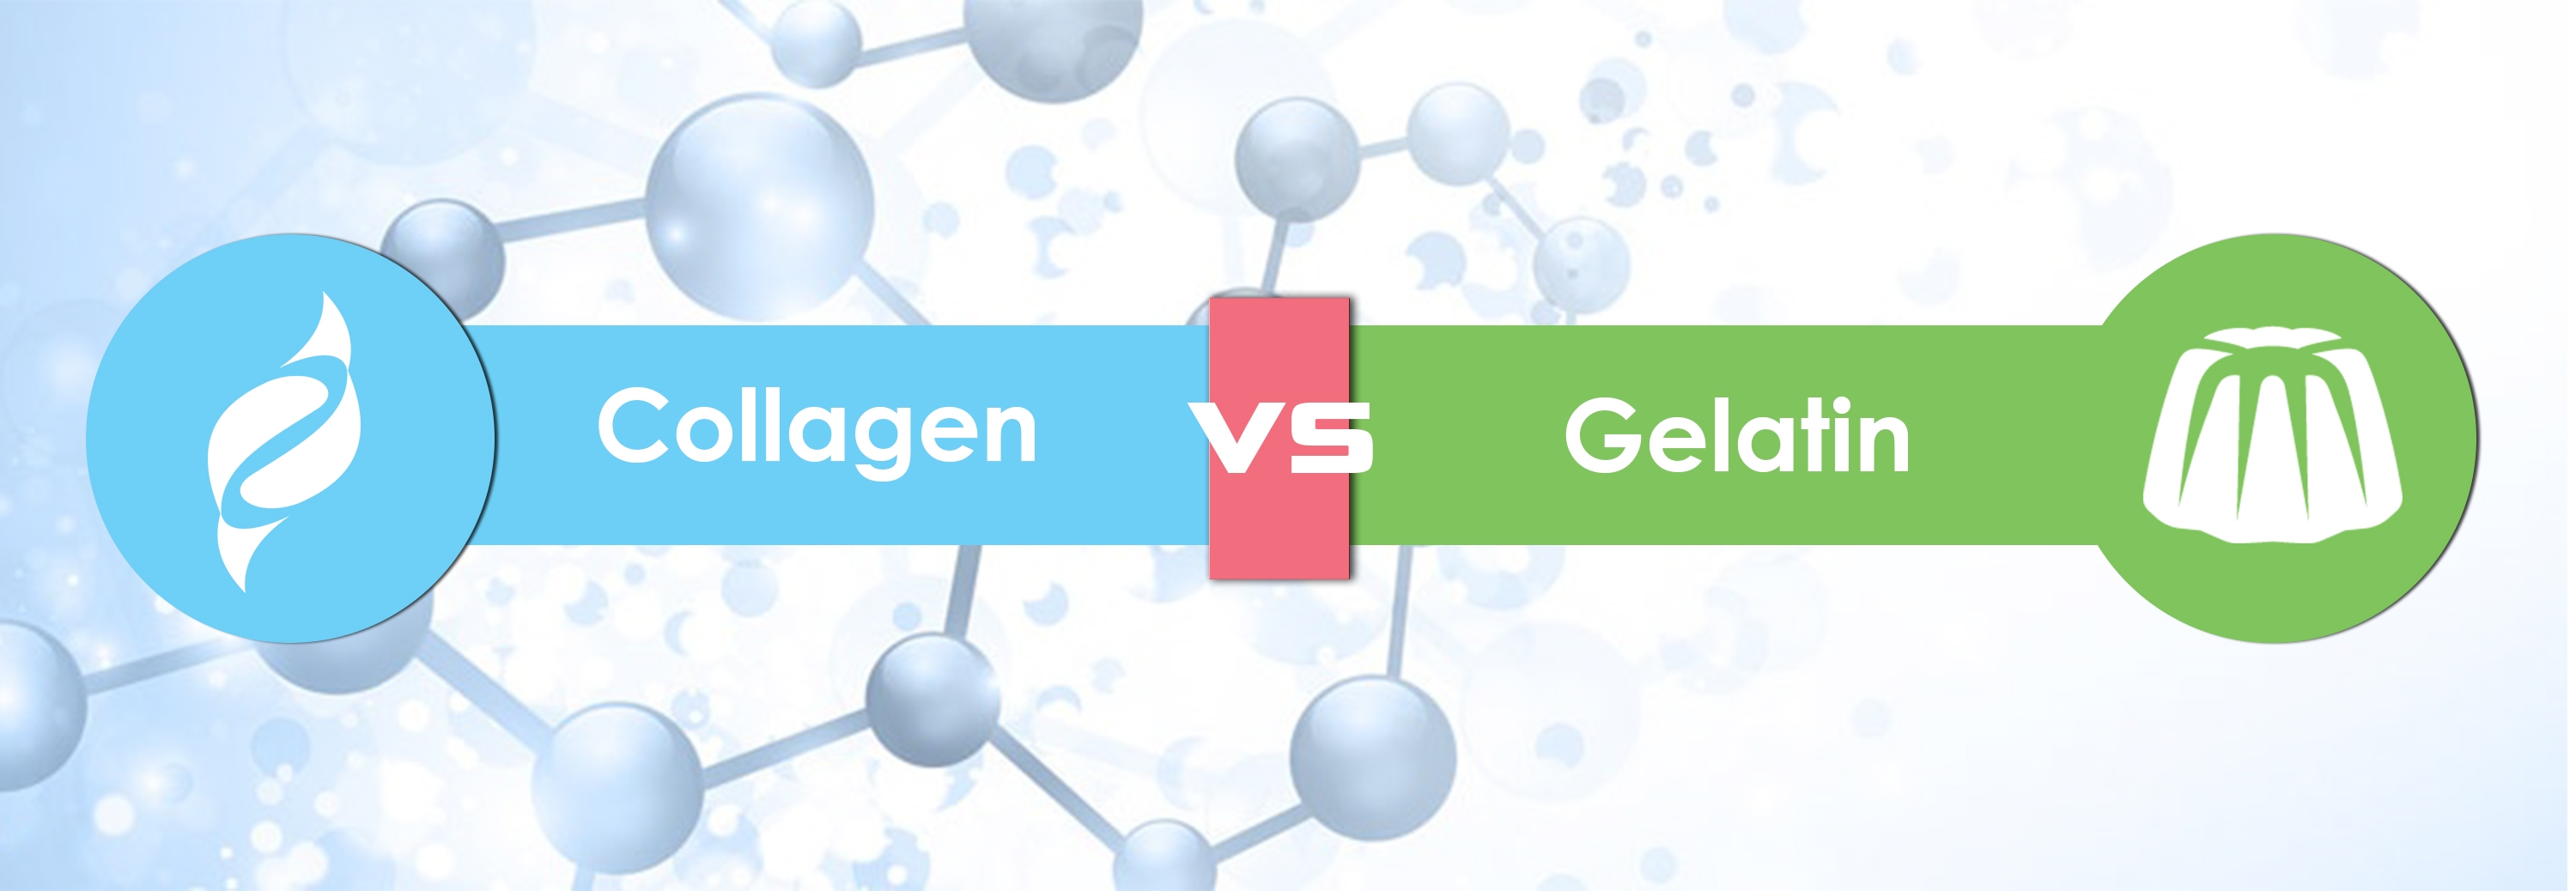 collagen vs gelatin thm